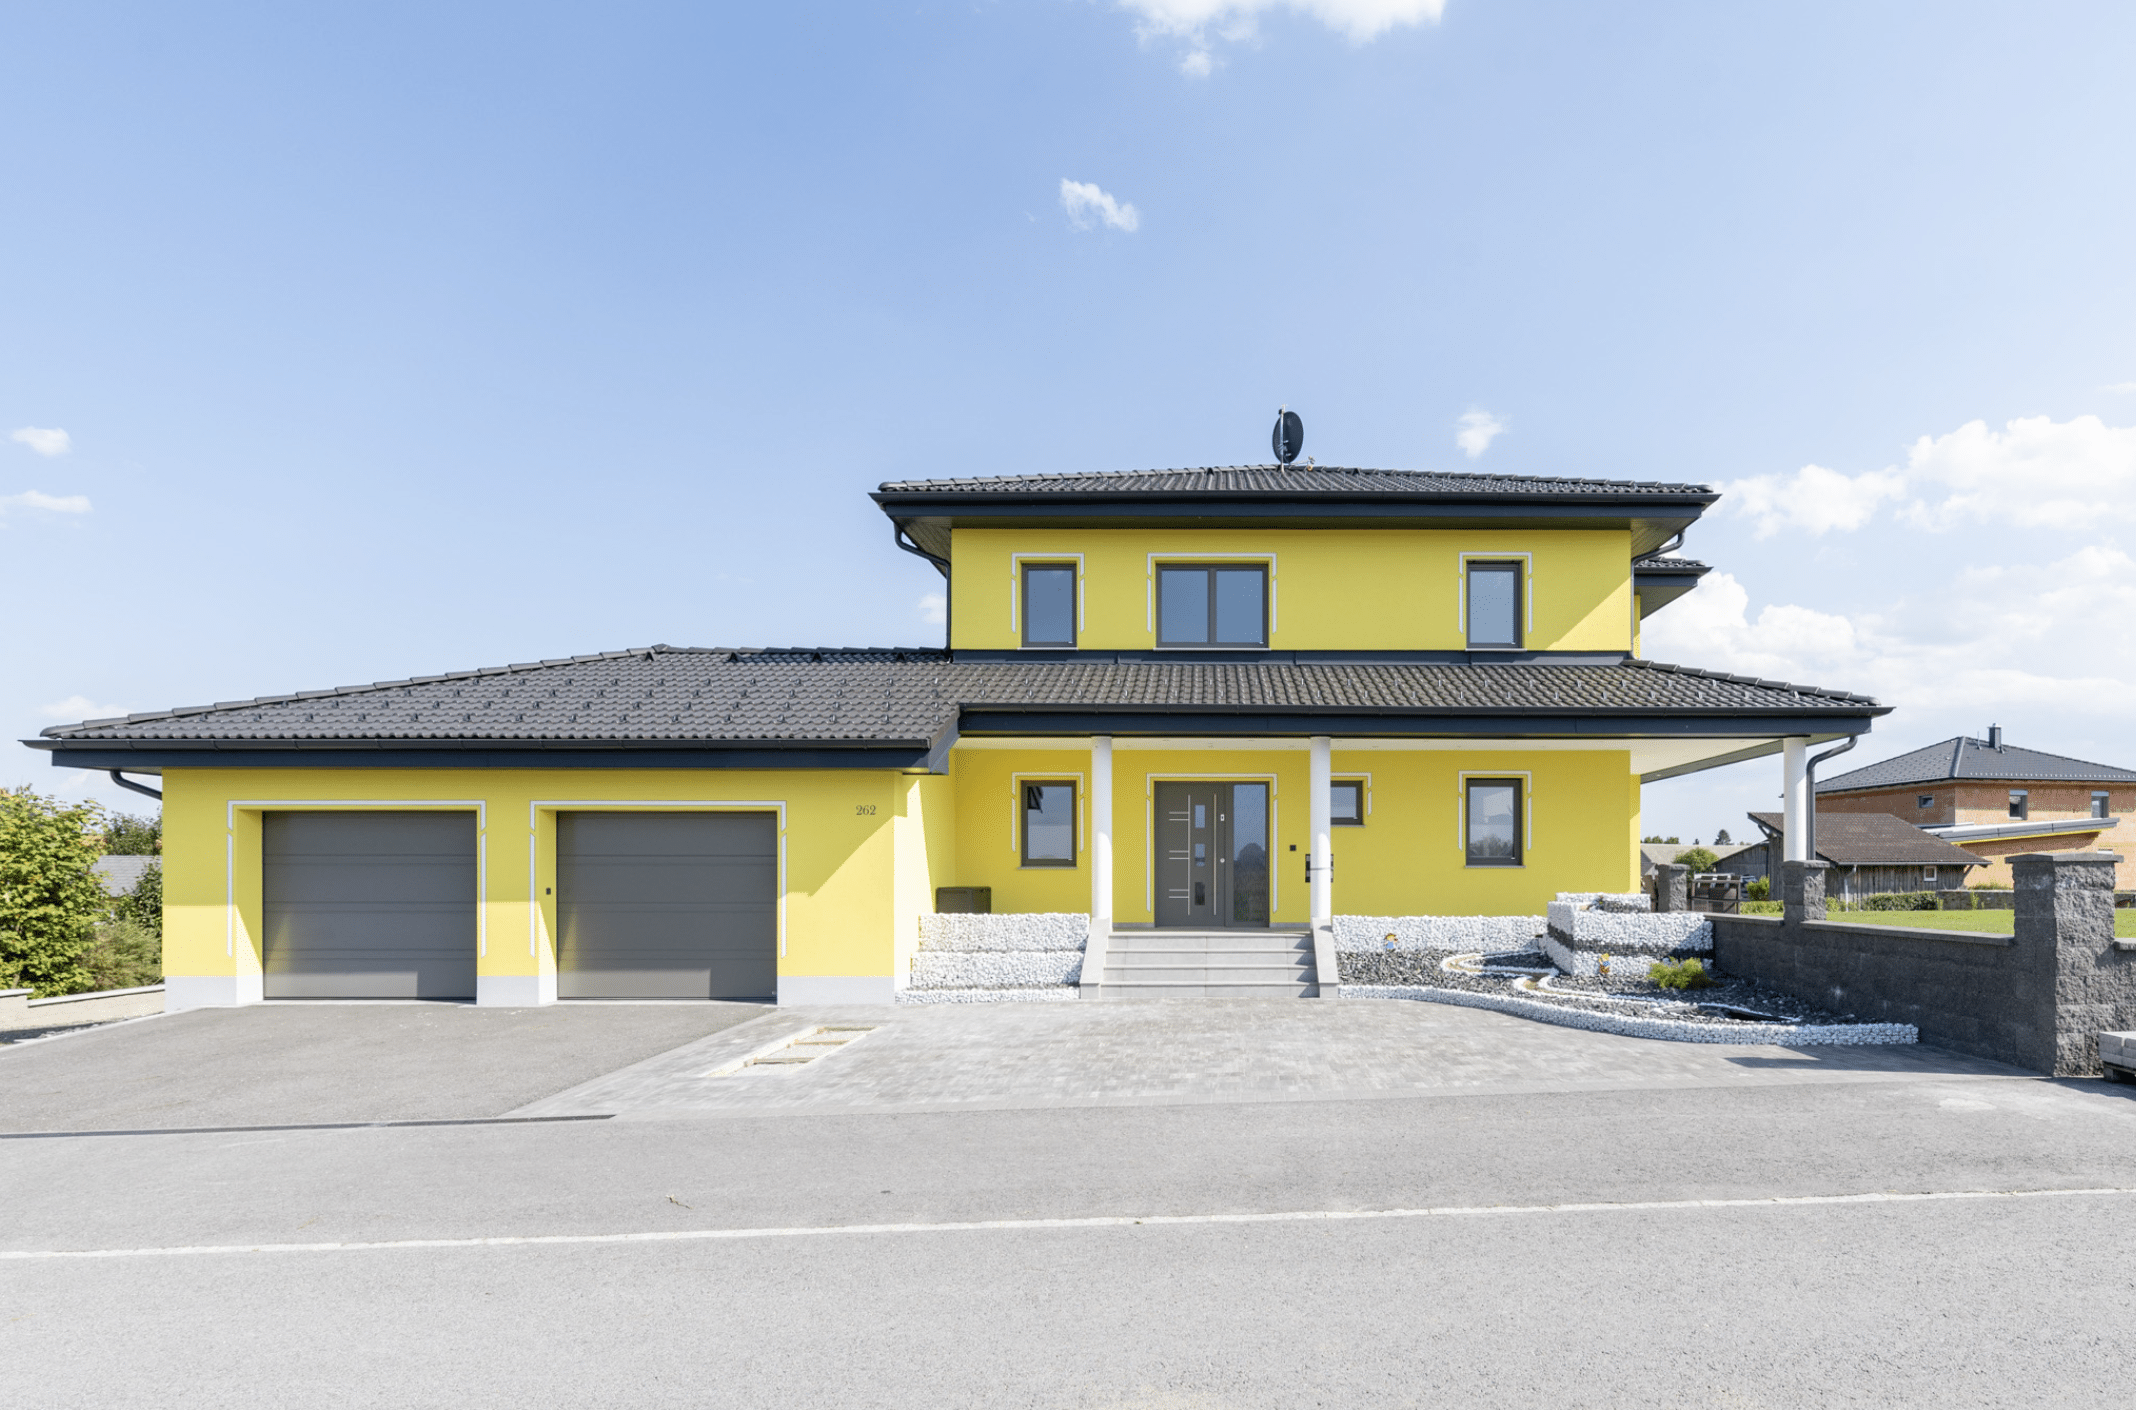 HARTL HAUS zeigt ein gelbes, zweistöckiges Einfamilienhaus mit Doppelgarage und geräumiger Zufahrt.